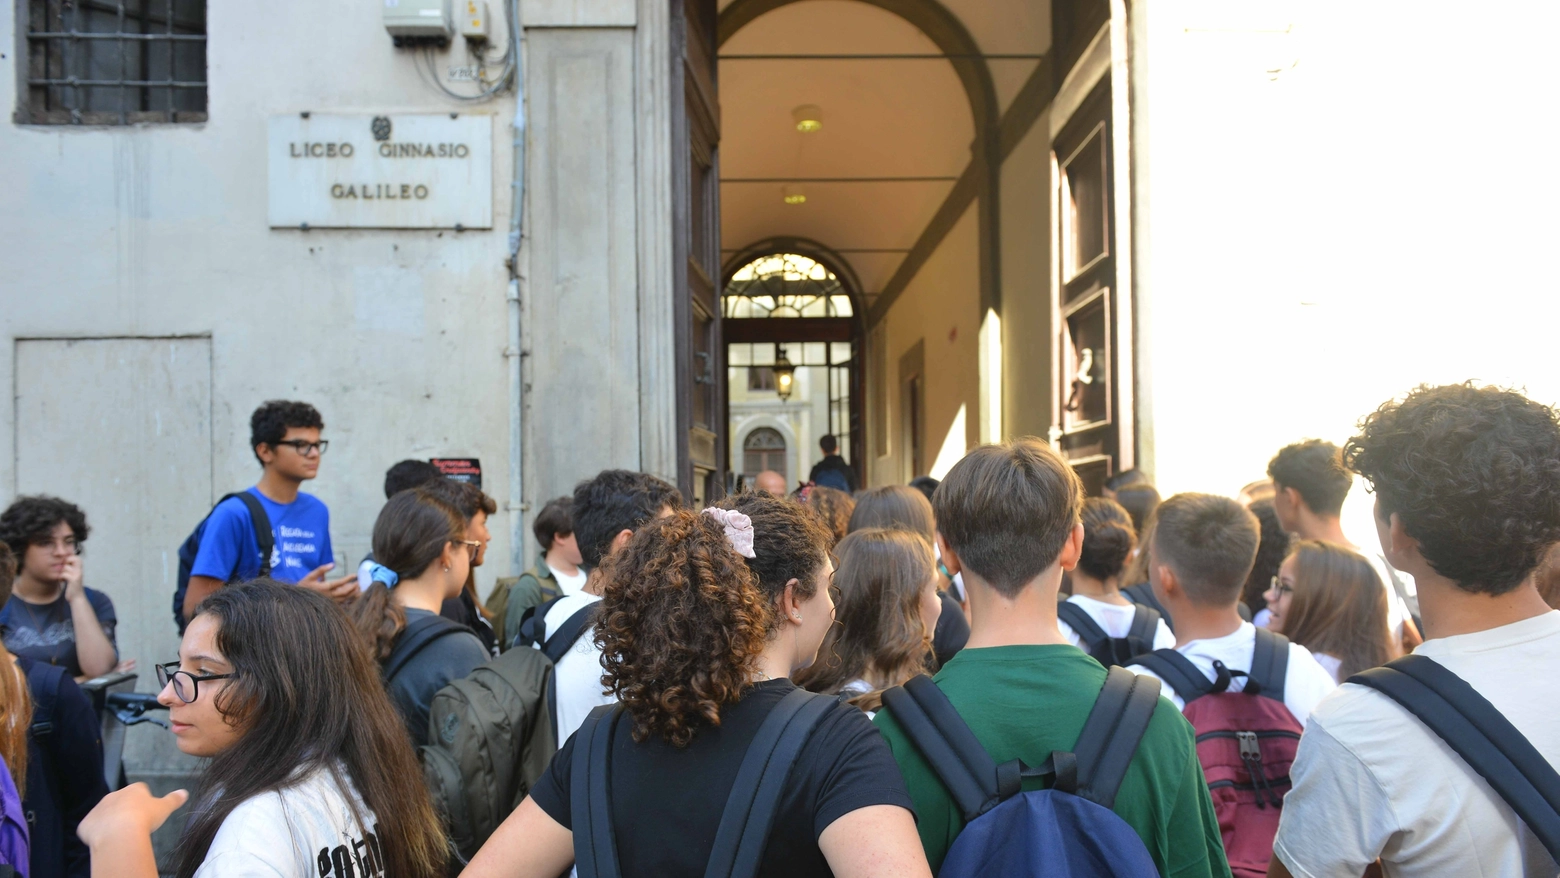 Gli studenti davanti all’ingresso di una scuola superiore in procinto  di entrare  in classe  (foto d’archivio)